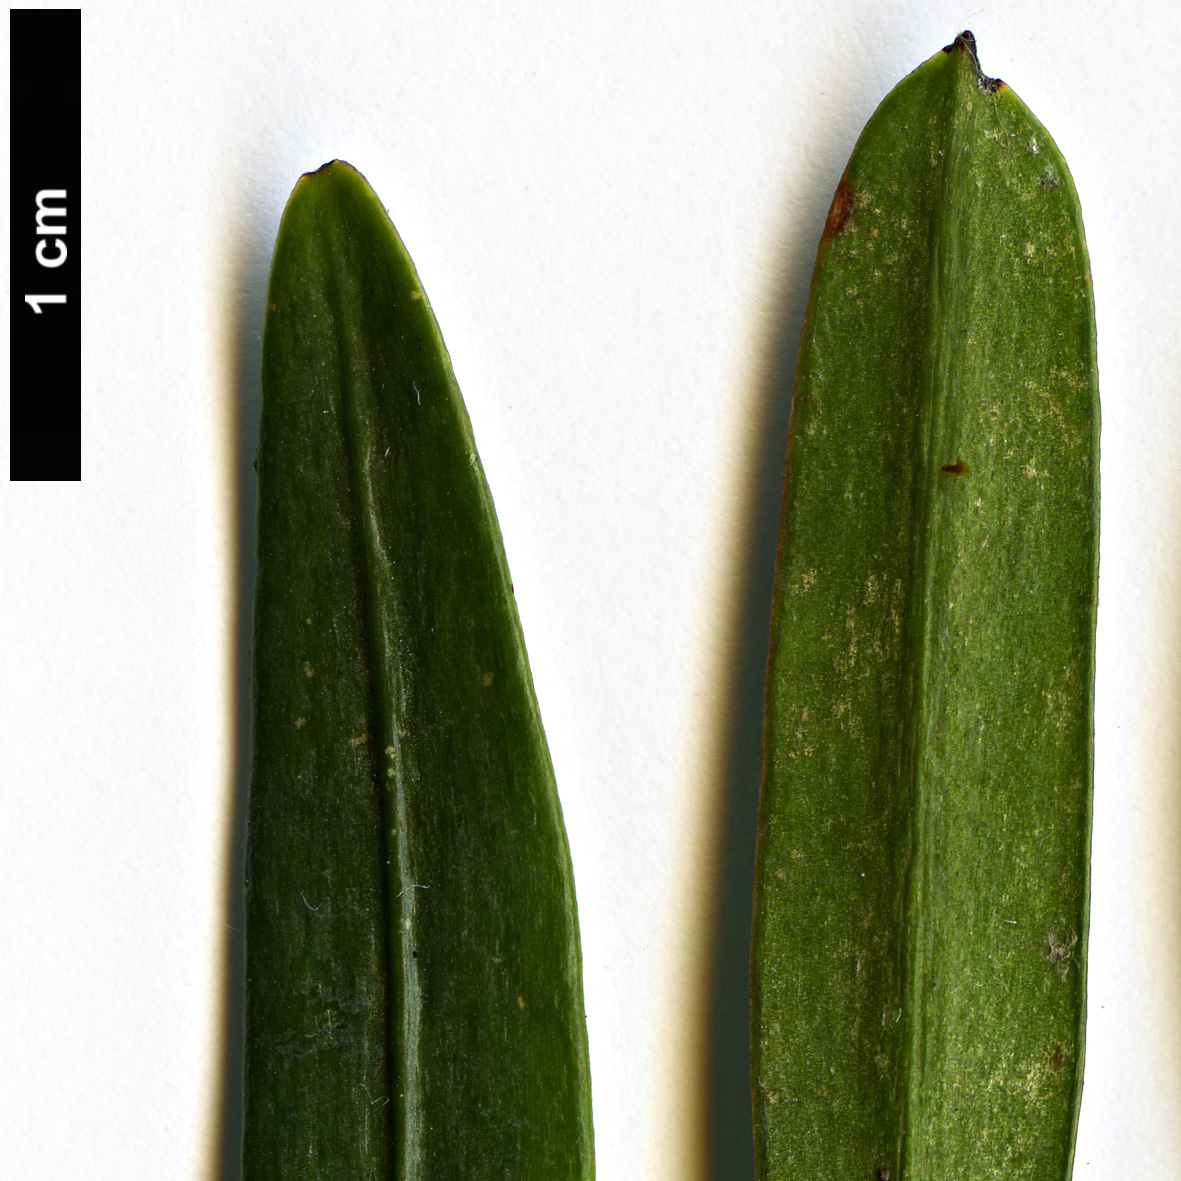 High resolution image: Family: Podocarpaceae - Genus: Podocarpus - Taxon: chingianus